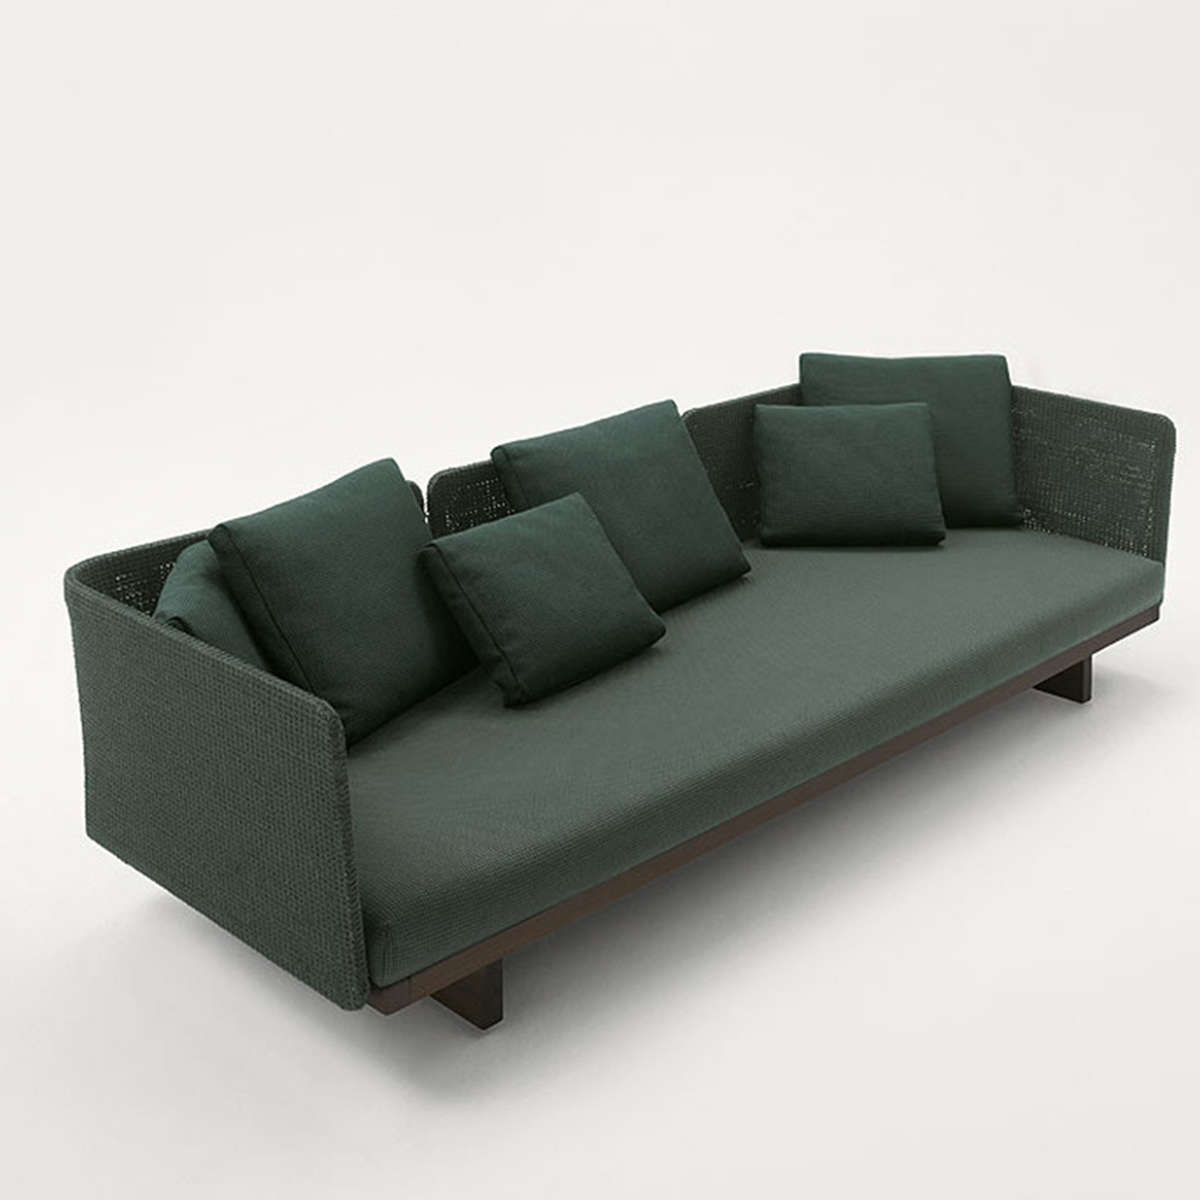 Một thiết kế của Sabi Sofa từ chất liệu gỗ, nứa đan đồng màu với đệm ngồi